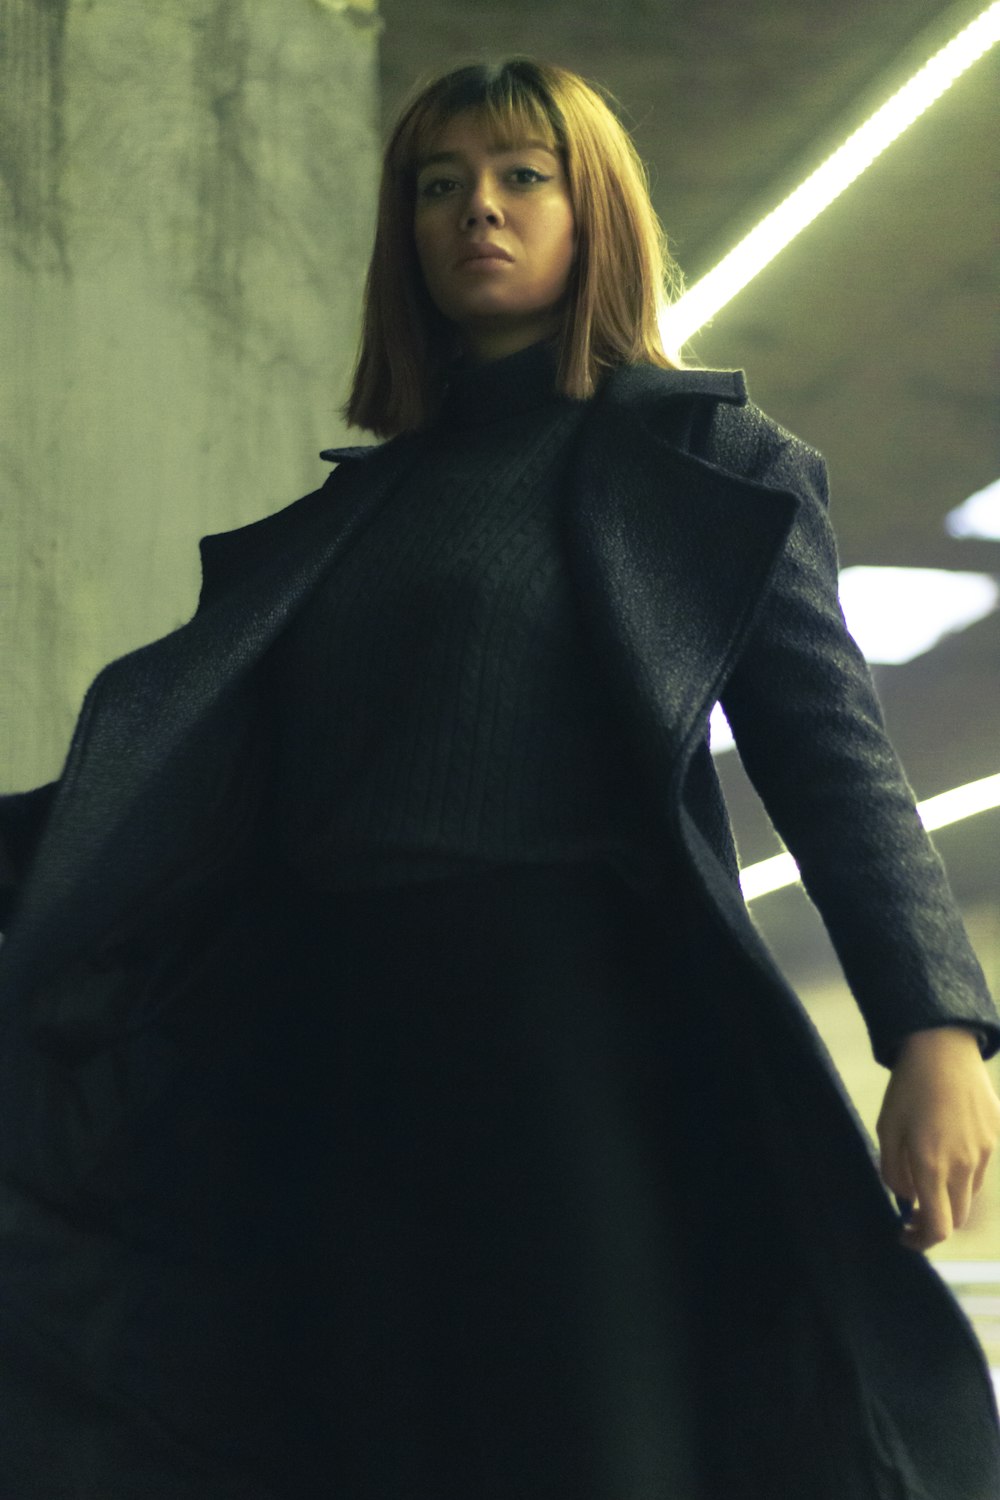 a woman in a black coat is walking